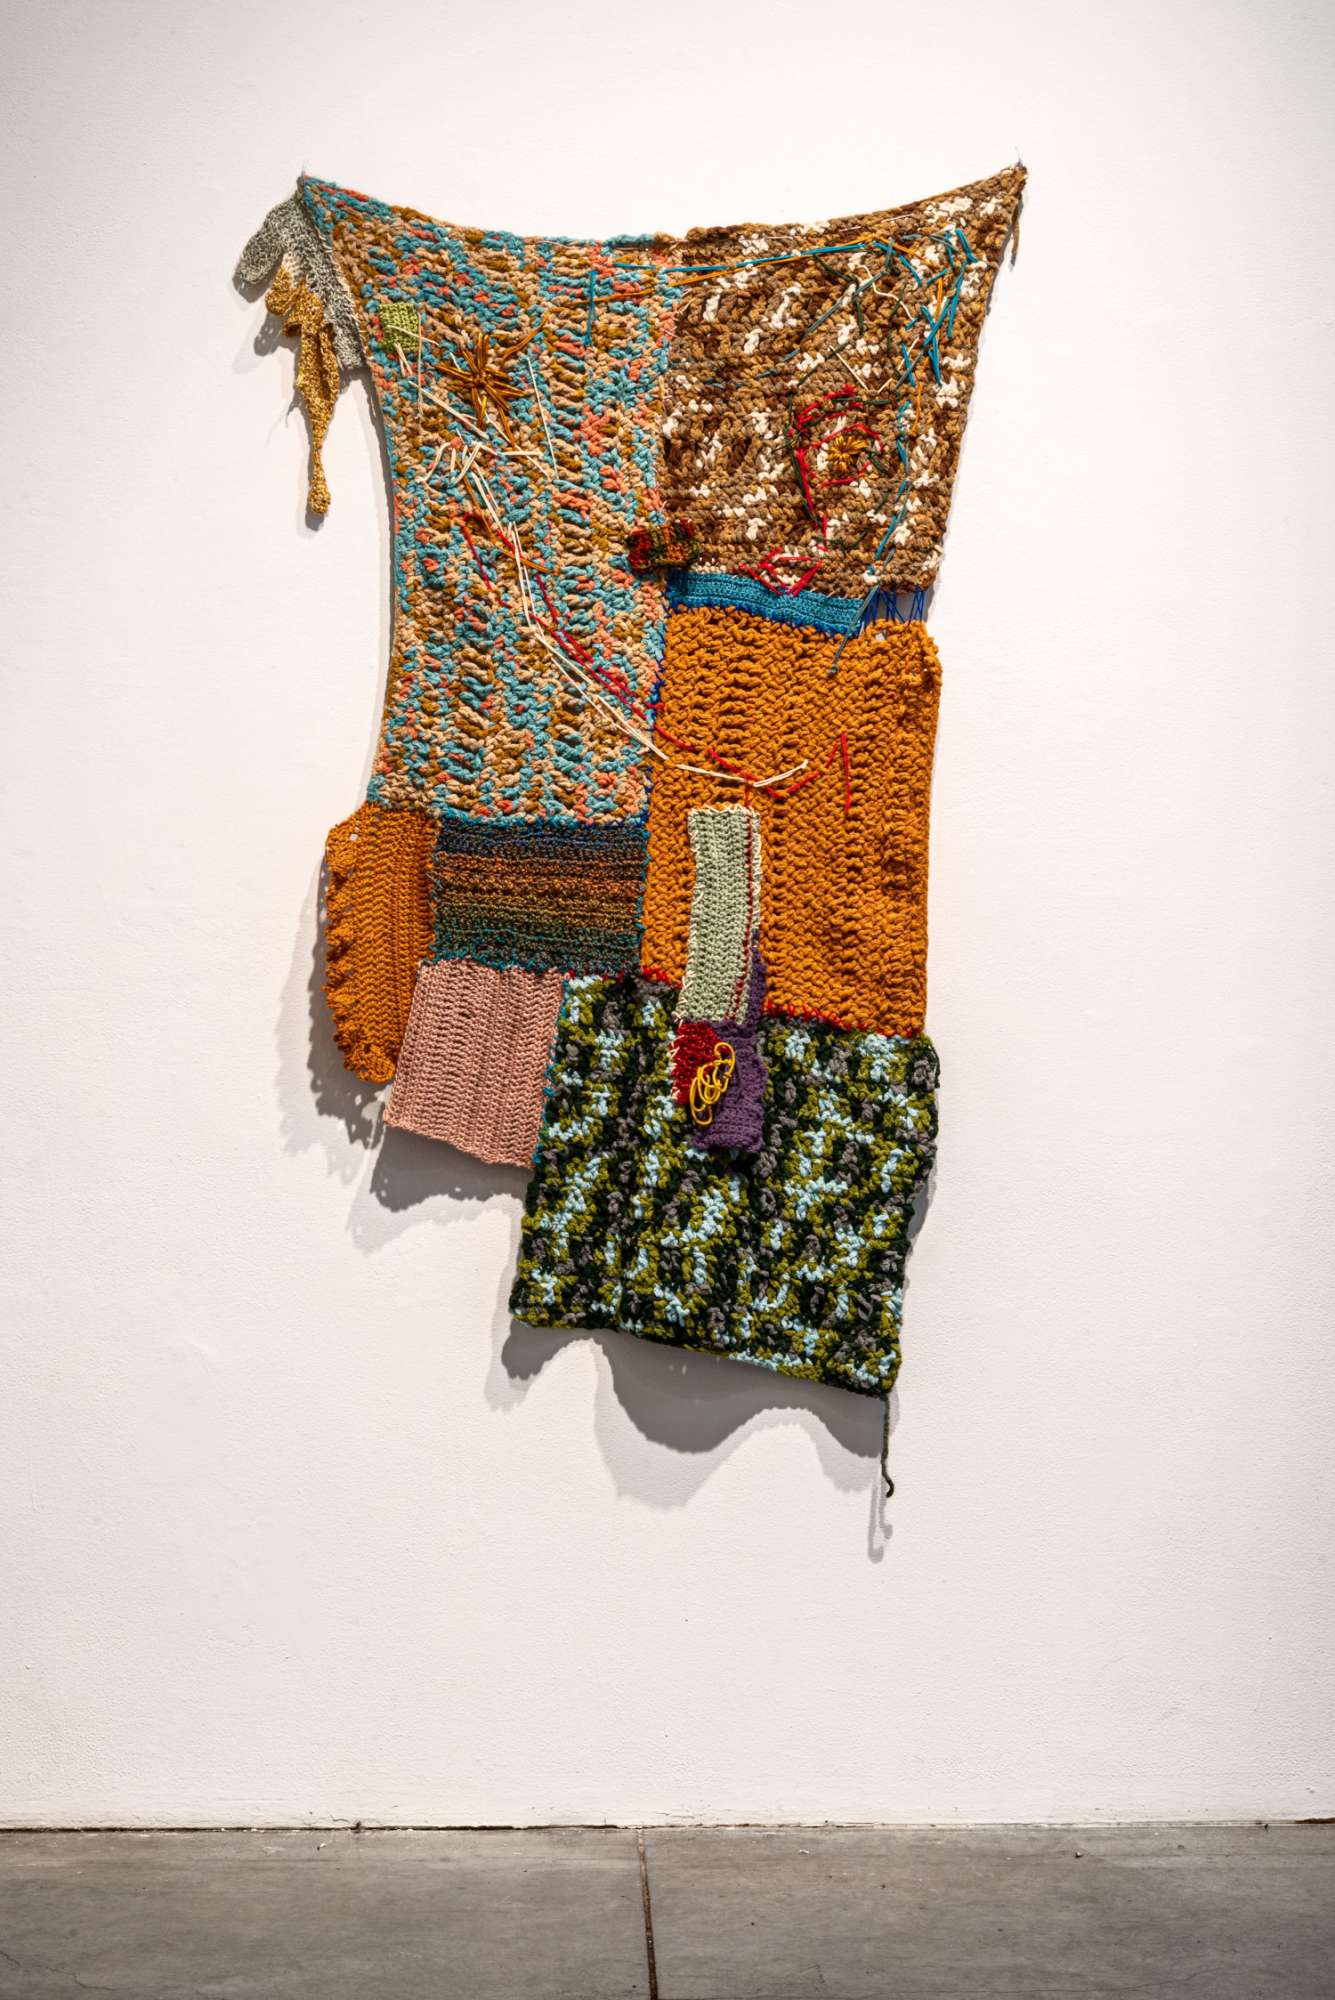 Astrid Li artwork with yarn